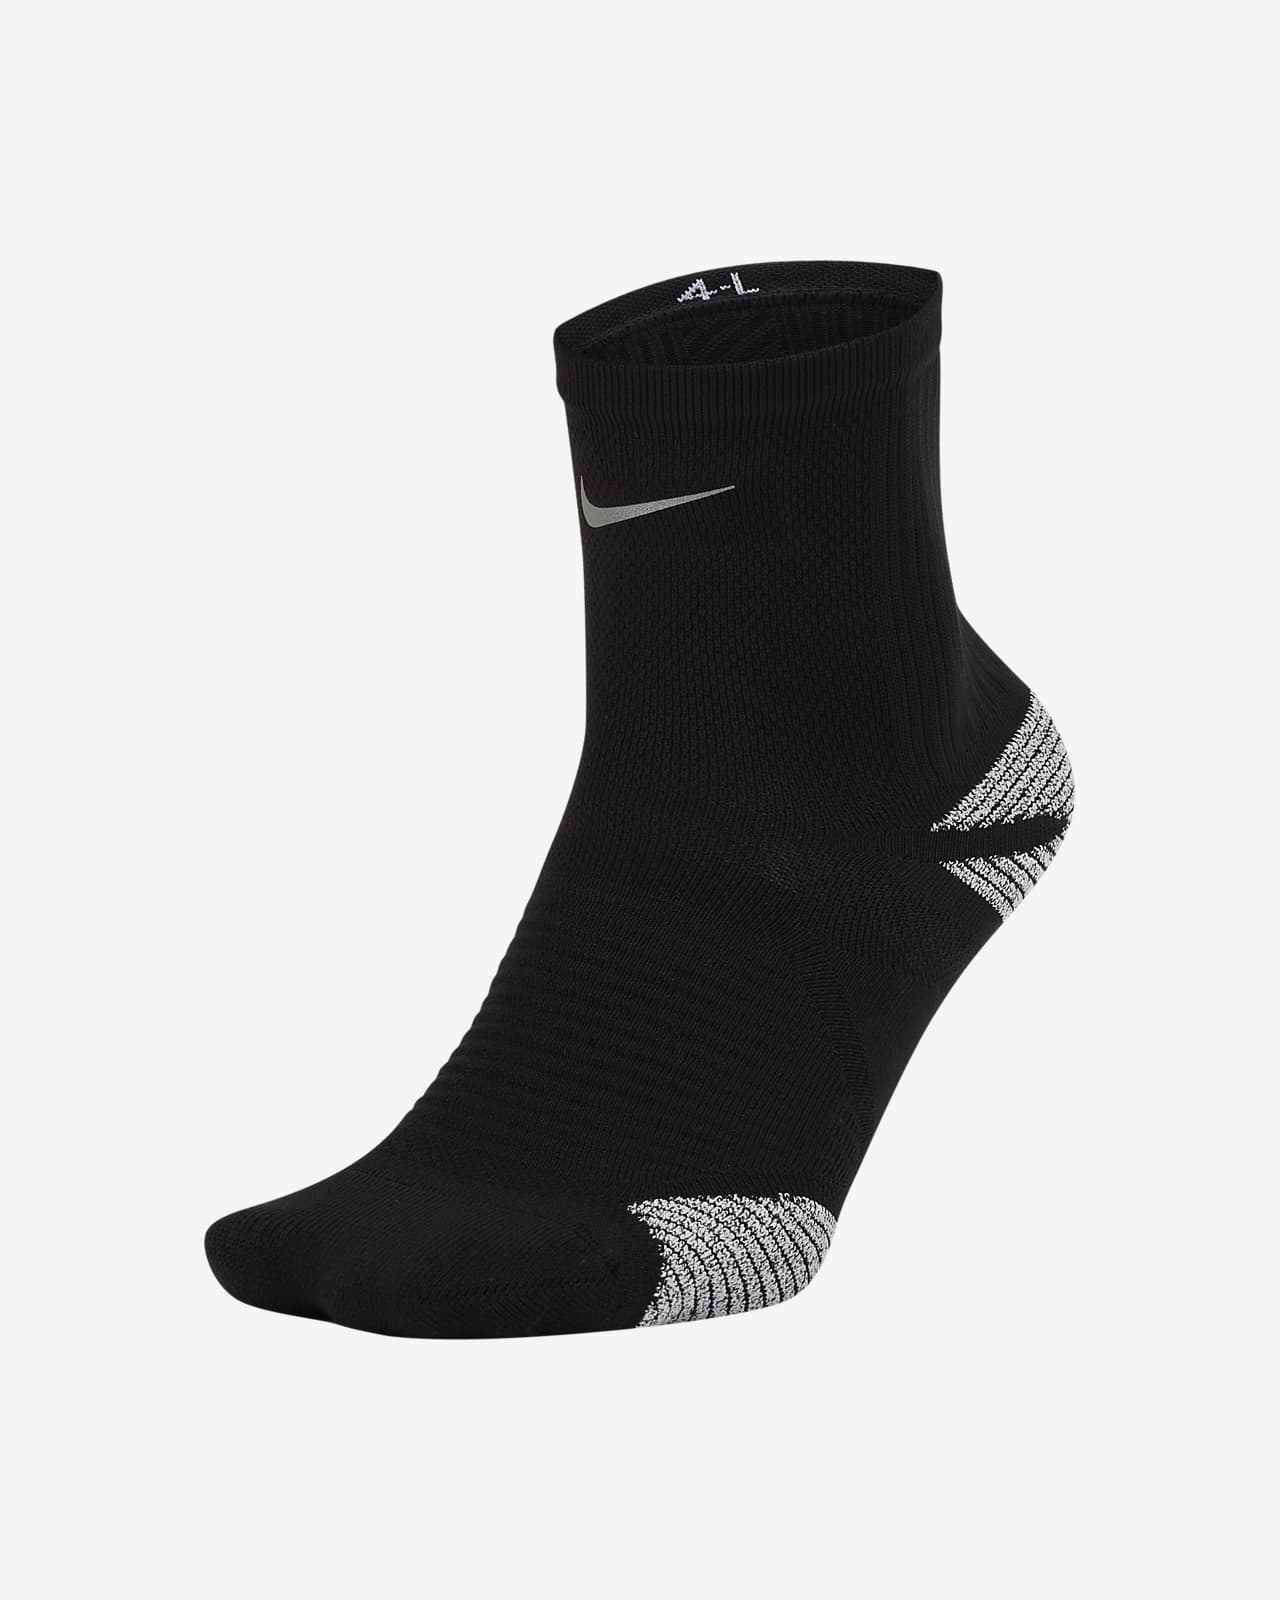 Nike Racing Calcetines hasta el tobillo